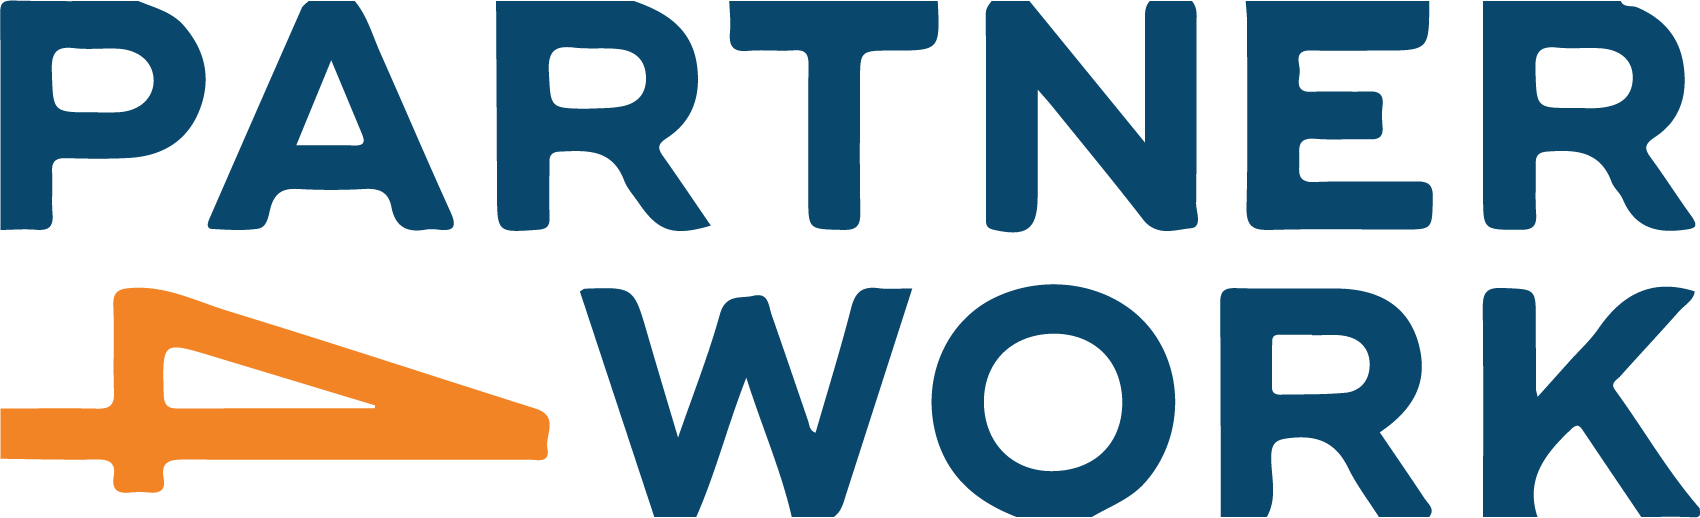 Partner 4 Work Logo